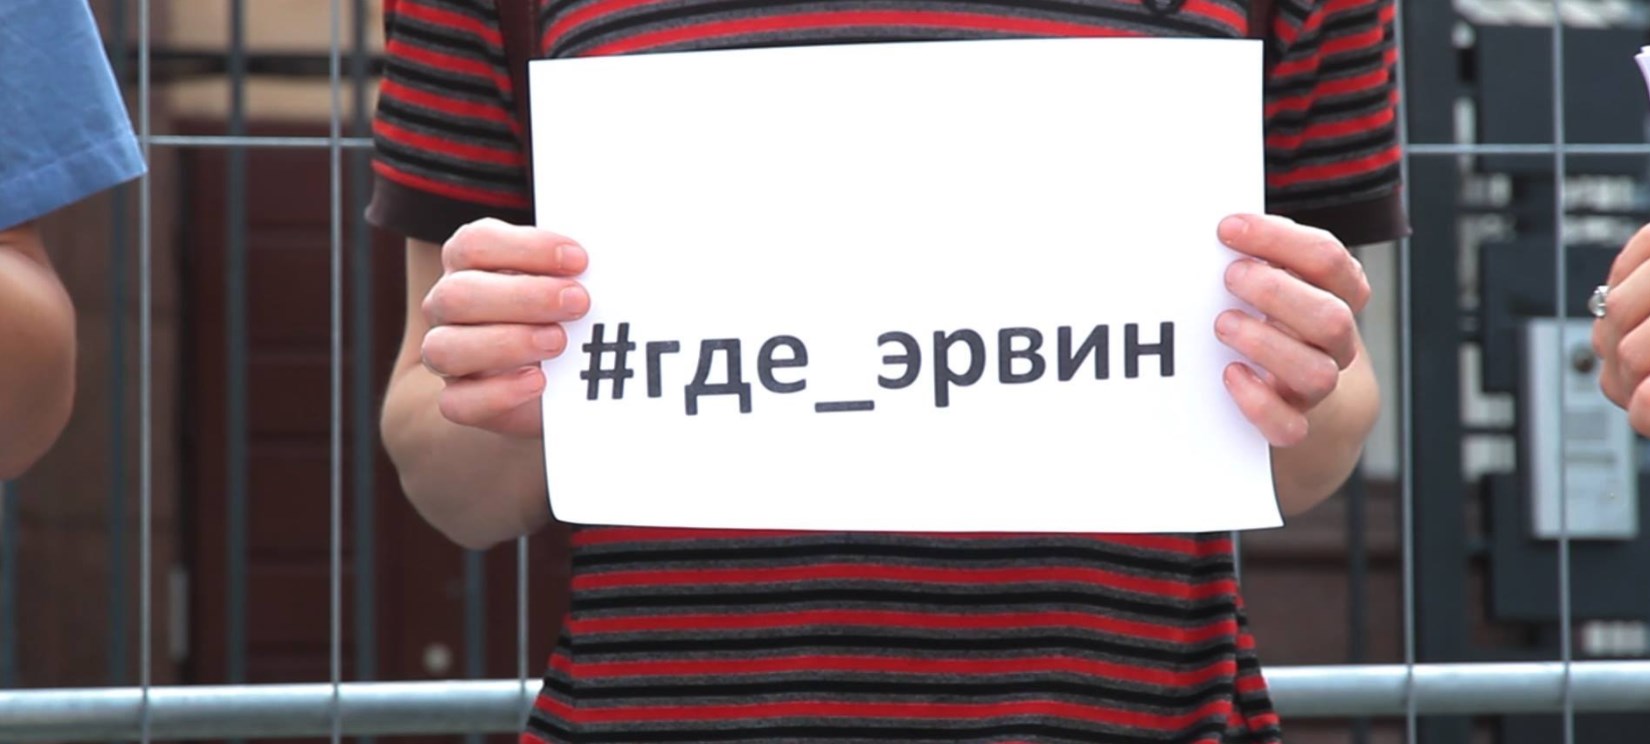 Российских дипломатов заставят увидеть требования найти пропавших крымчан